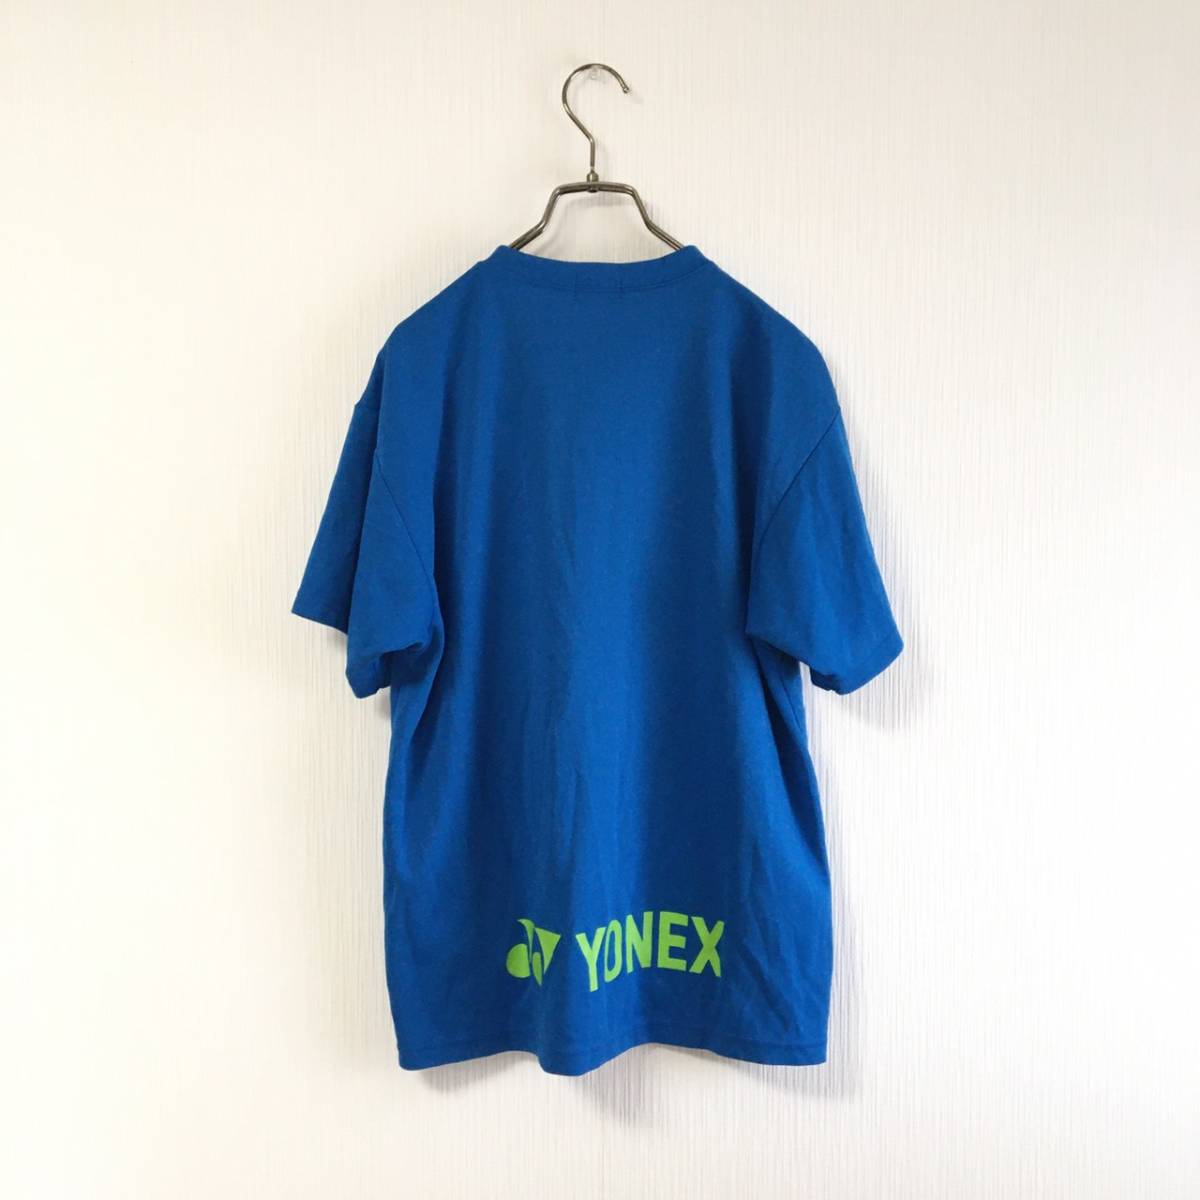  Yonex YONEX men's dry T-shirt blue back print tennis badminton size M